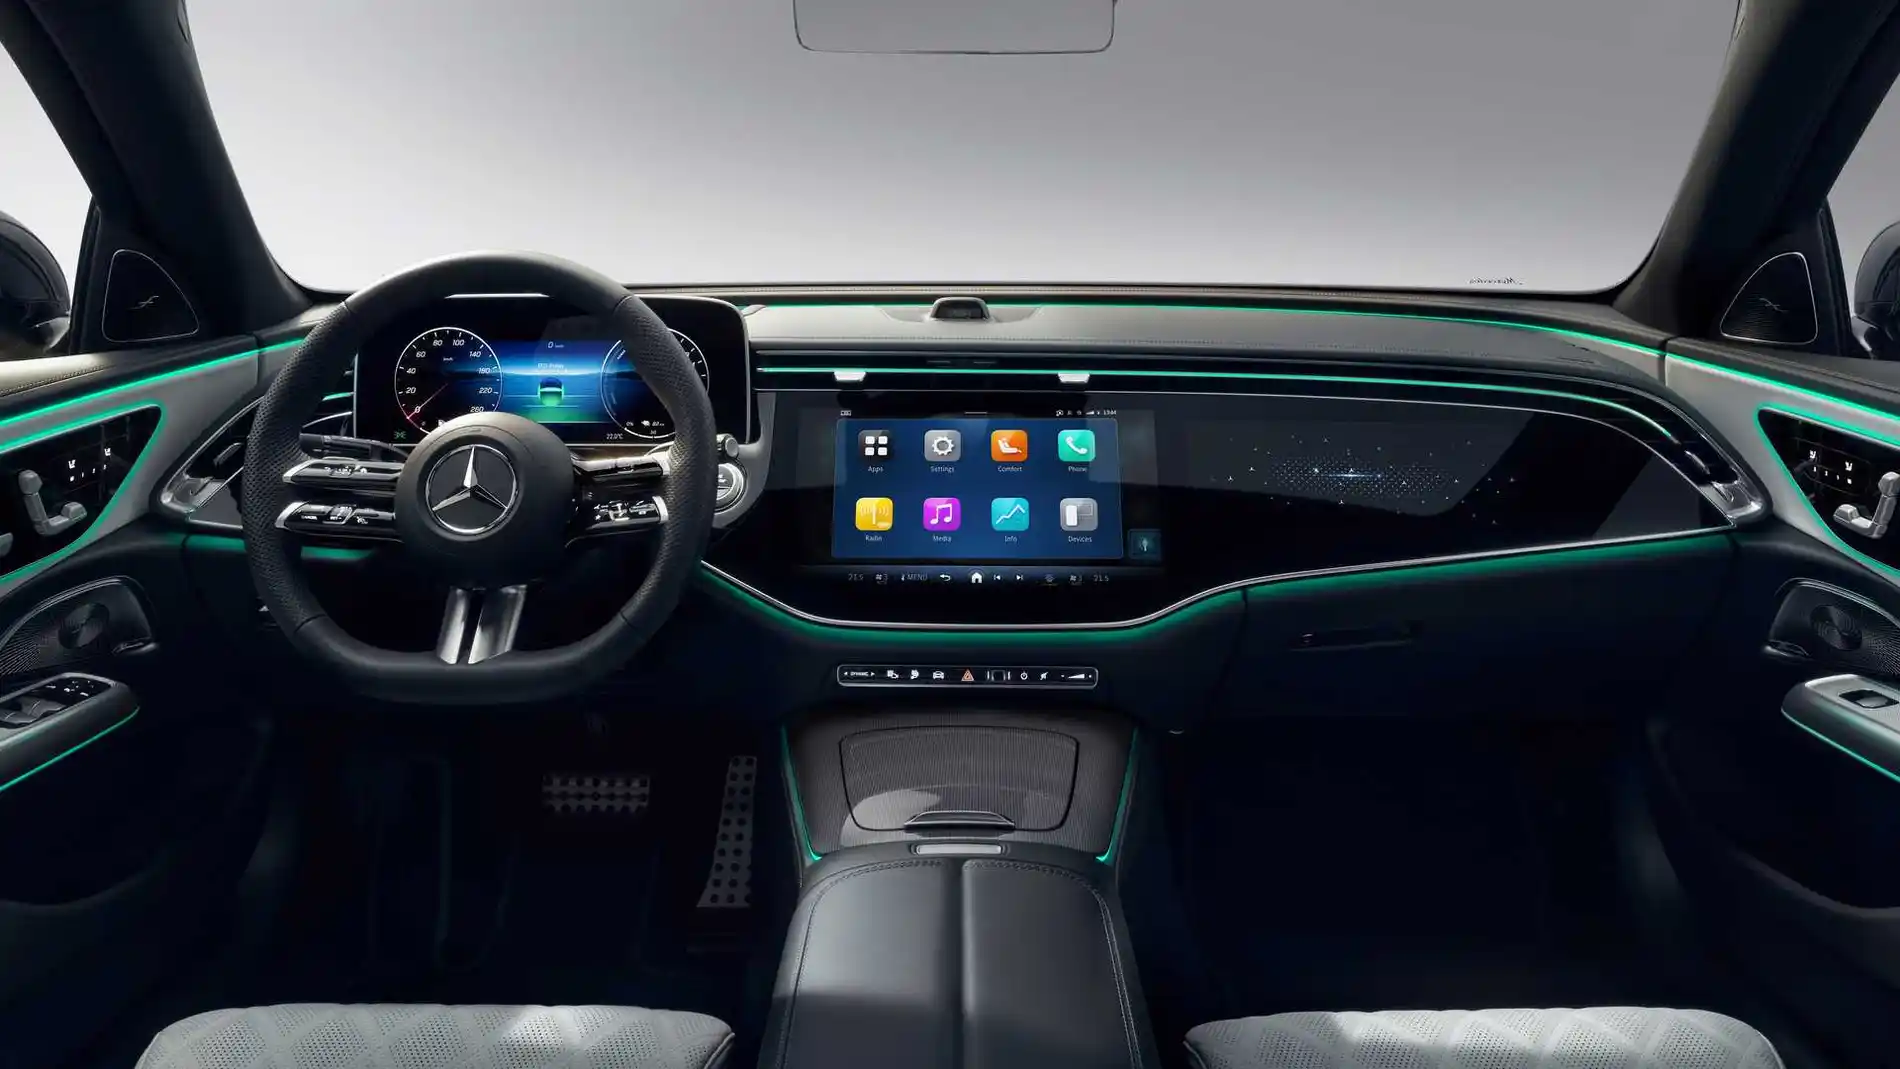 La nueva generación del Mercedes Clase E descubre su interior